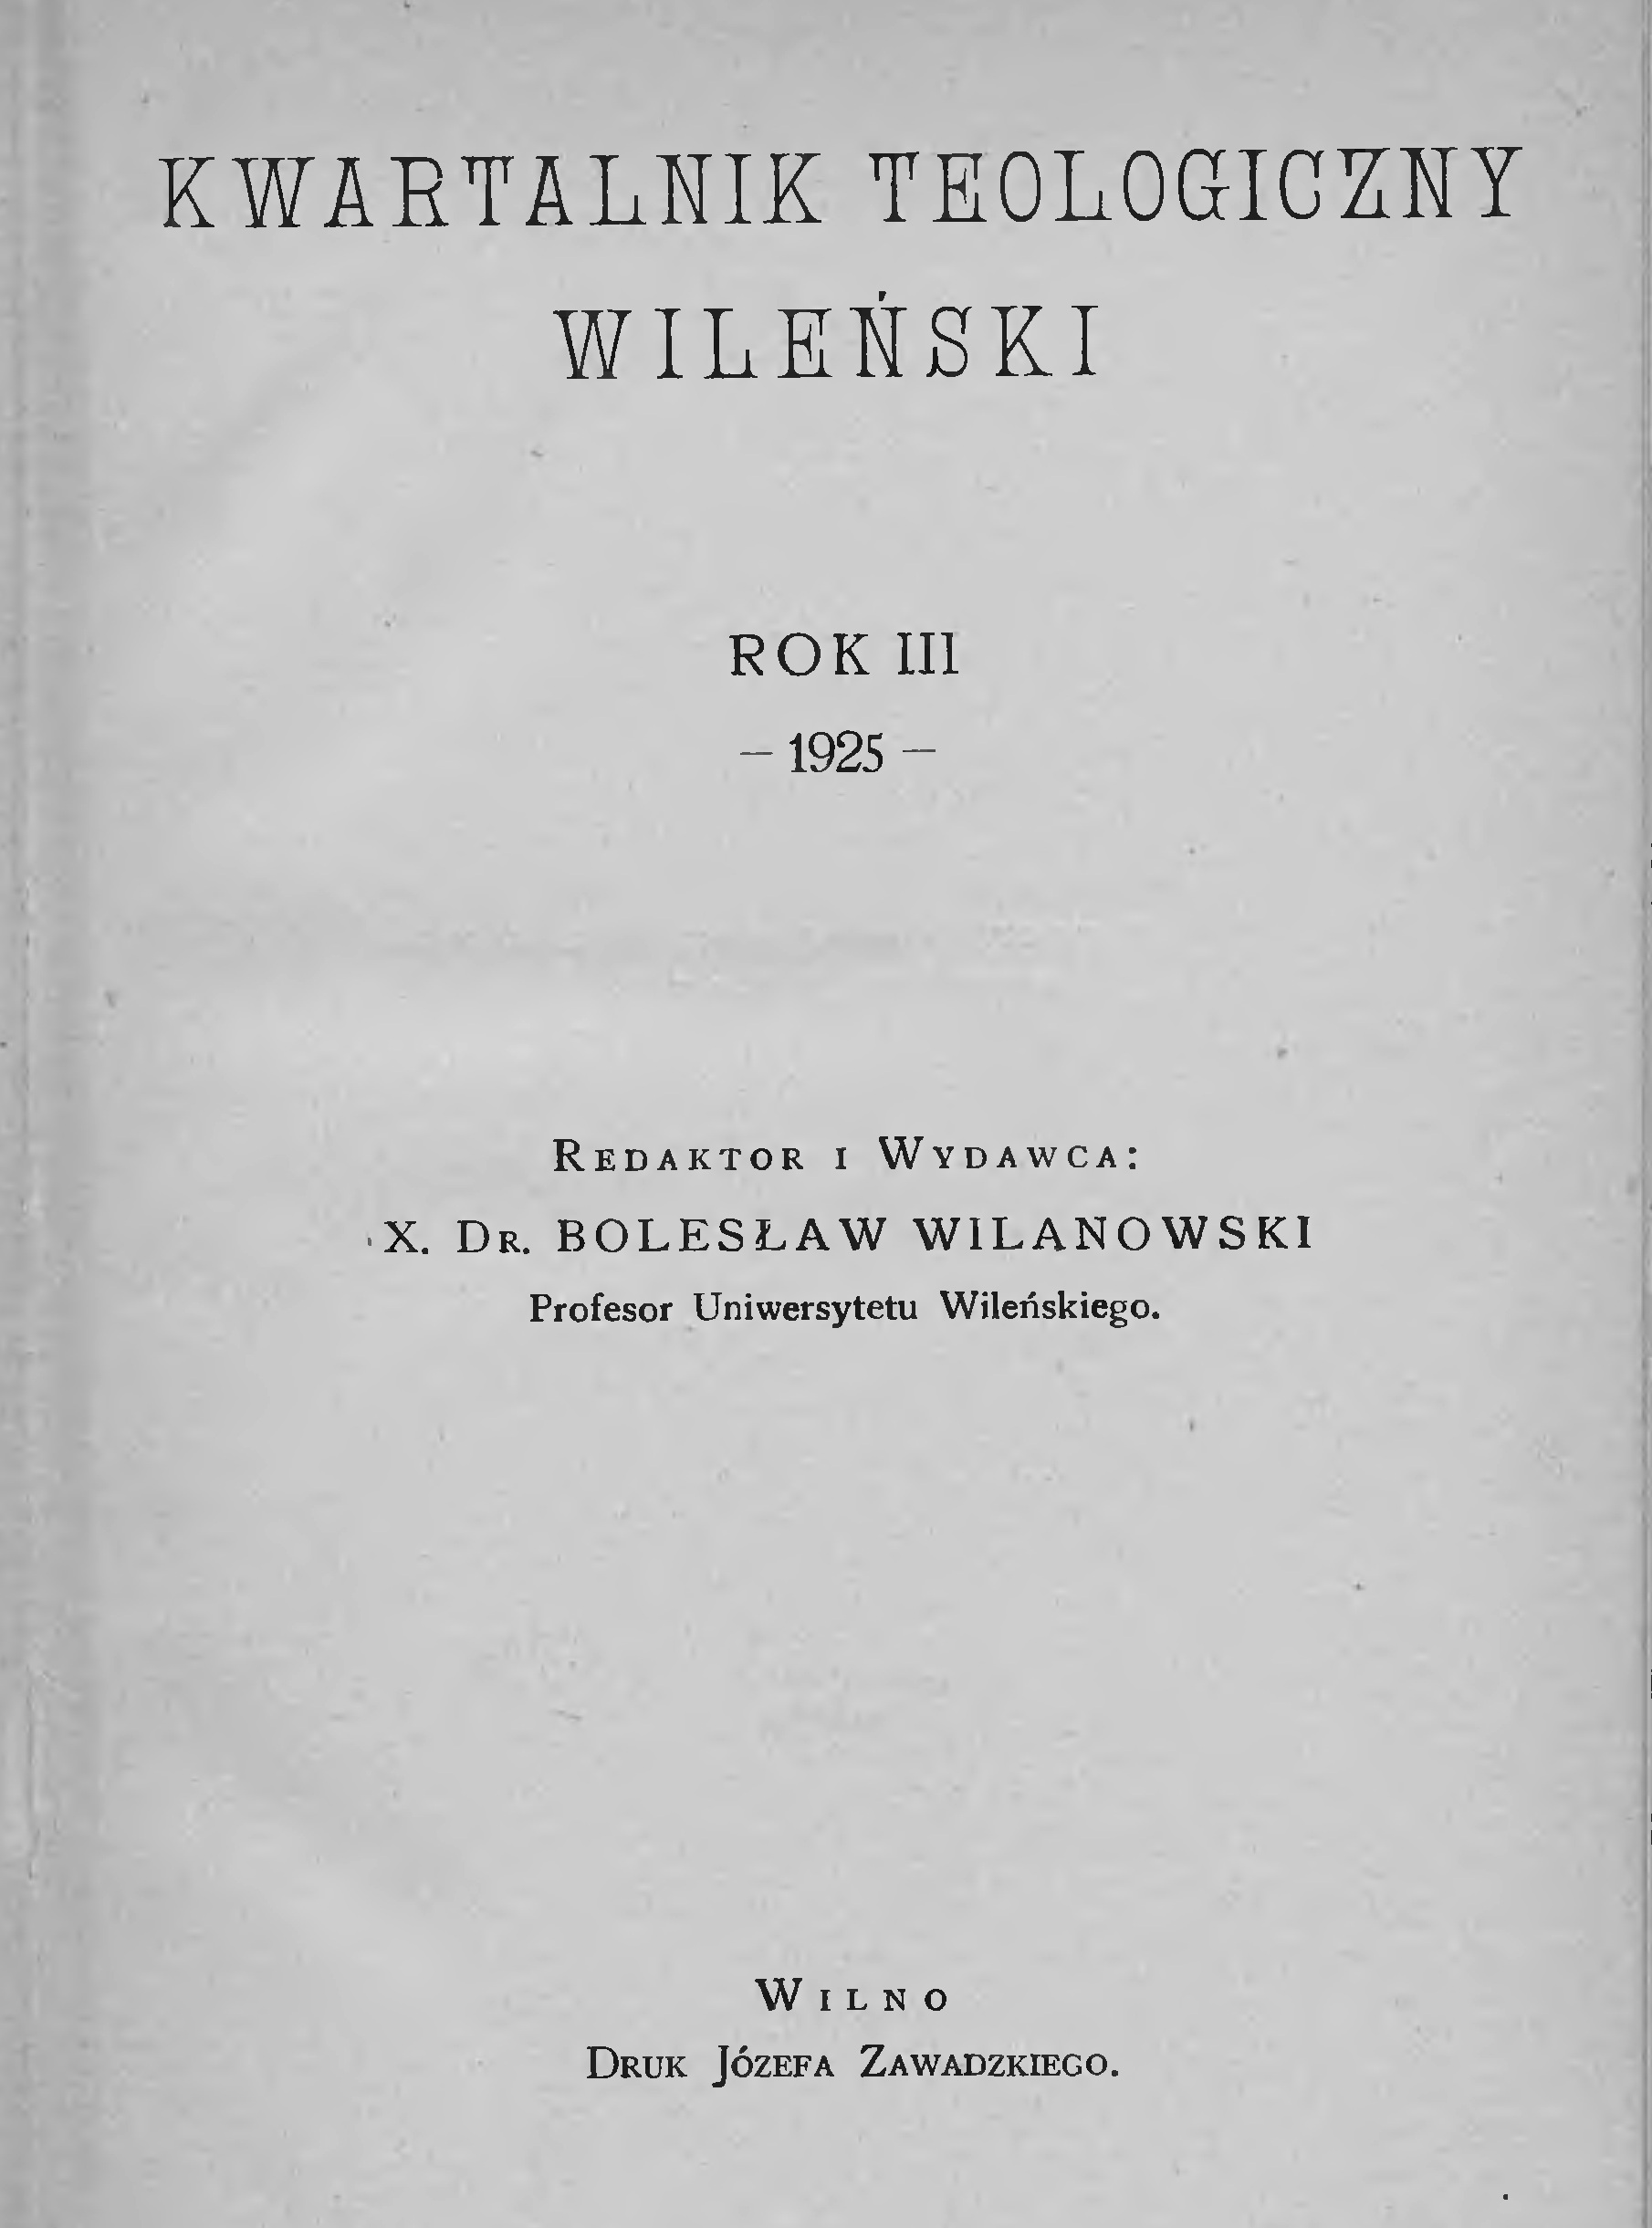 "Kwartalnik Teologiczny Wileski". Wilno. Rok III. 1925. (REDAKTOR: X. DR. BOLESAW WILANOWSKI, PROF. UNIW. STEFANA BATOREGO).